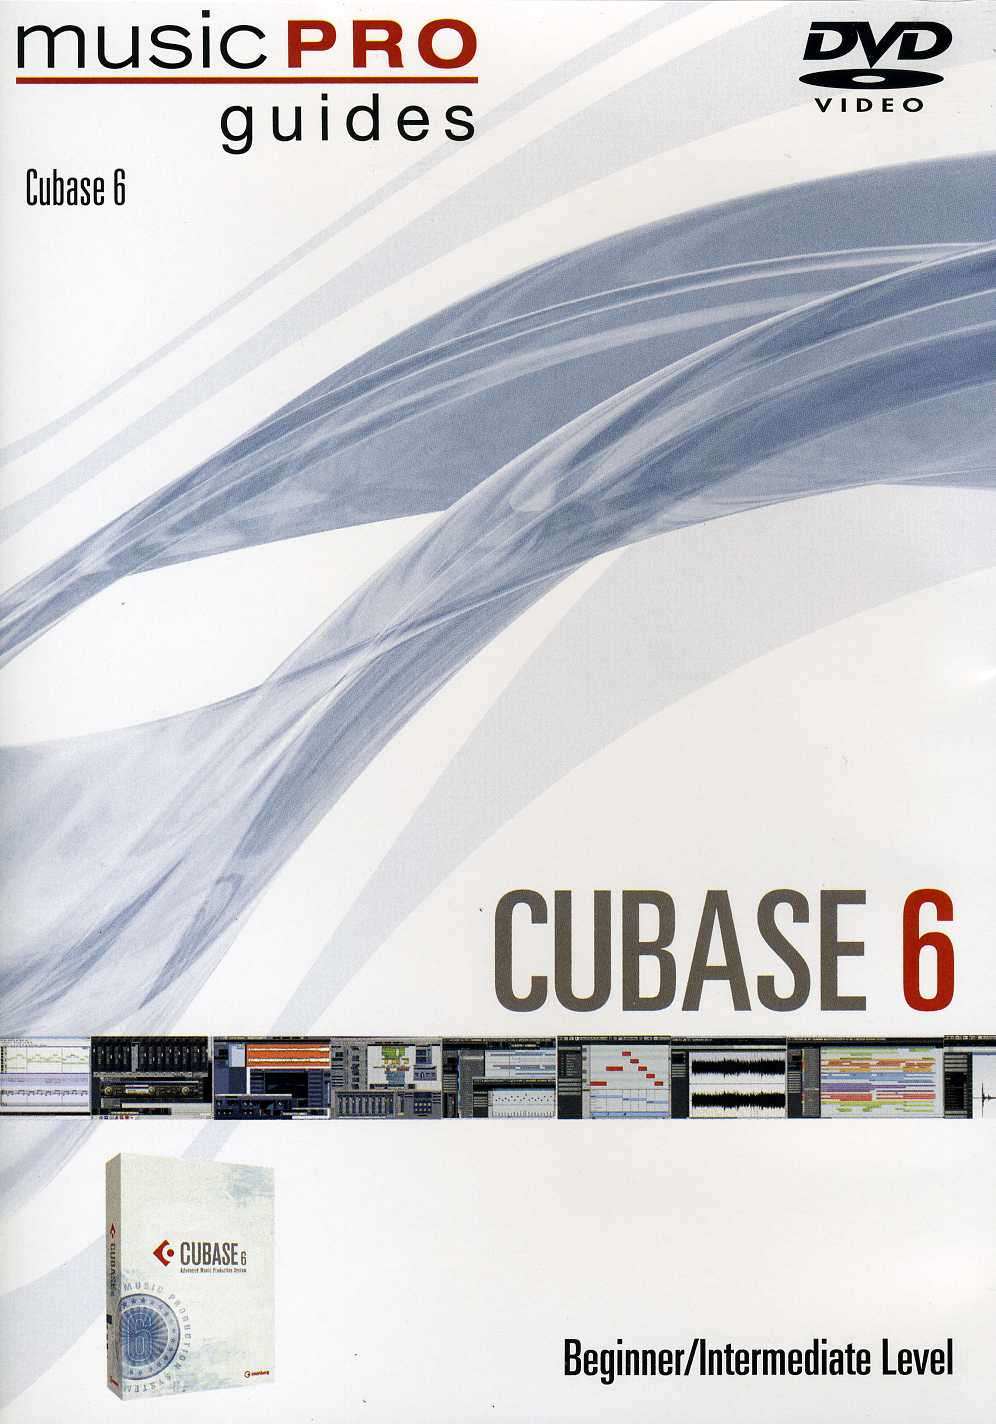 MUSIC PRO GUIDES: CUBASE 6 - BEGINNER INTERMEDIATE